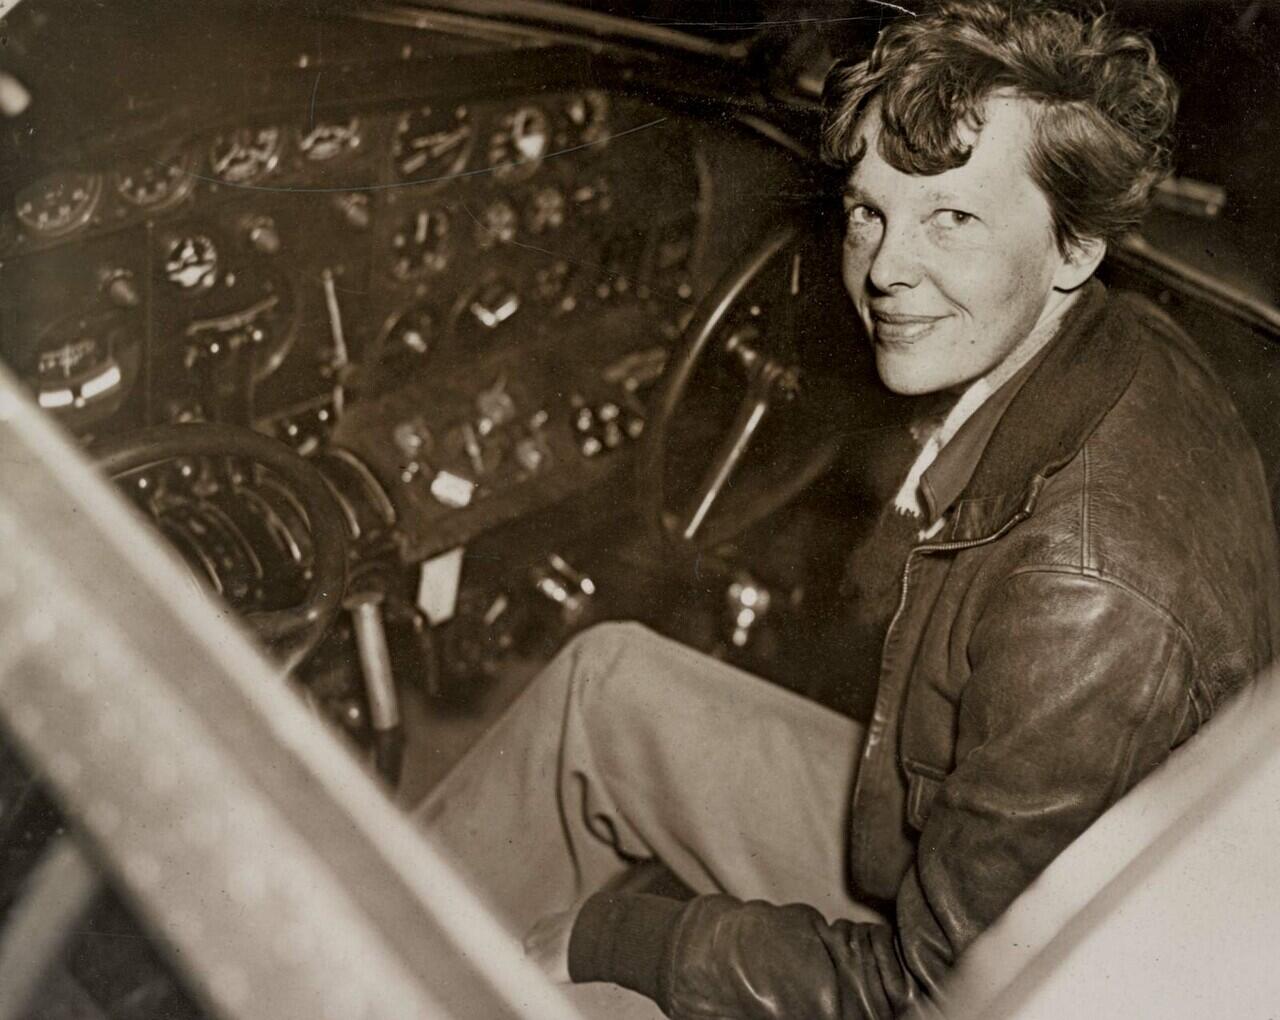 Melacak Jejak Hilangnya Amelia Earhart